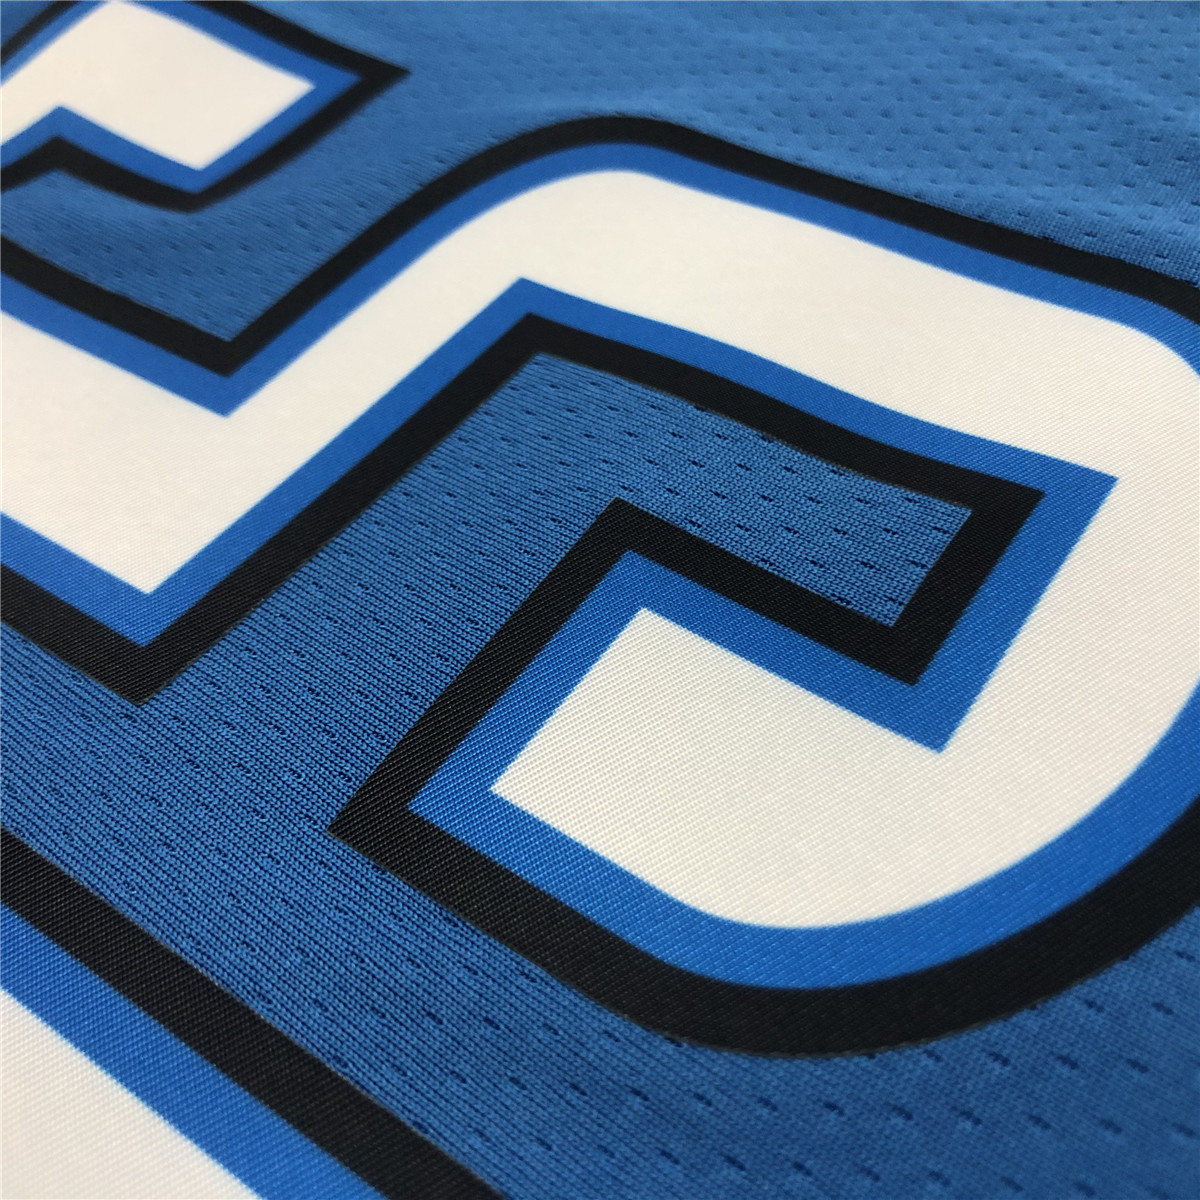 Oklahoma City Thunder Swingman Jersey Blue Mens 2021 Icon Edition